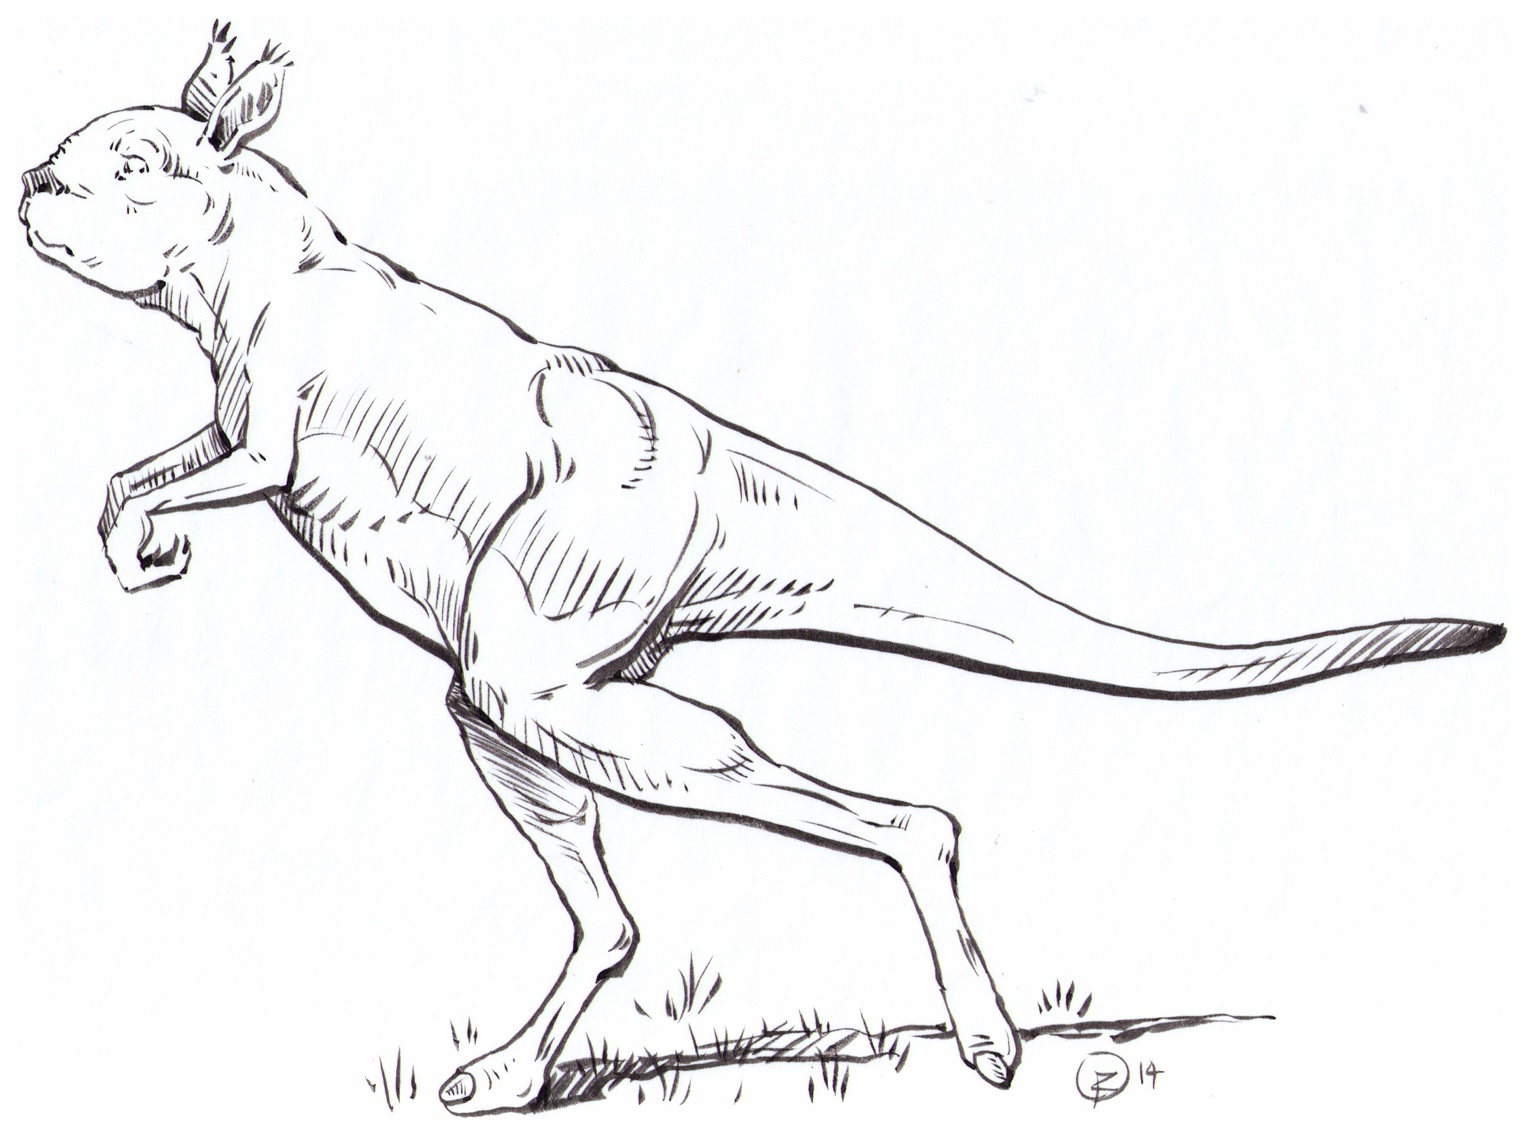 10万年前澳大利亚袋鼠与人类一样直立行走